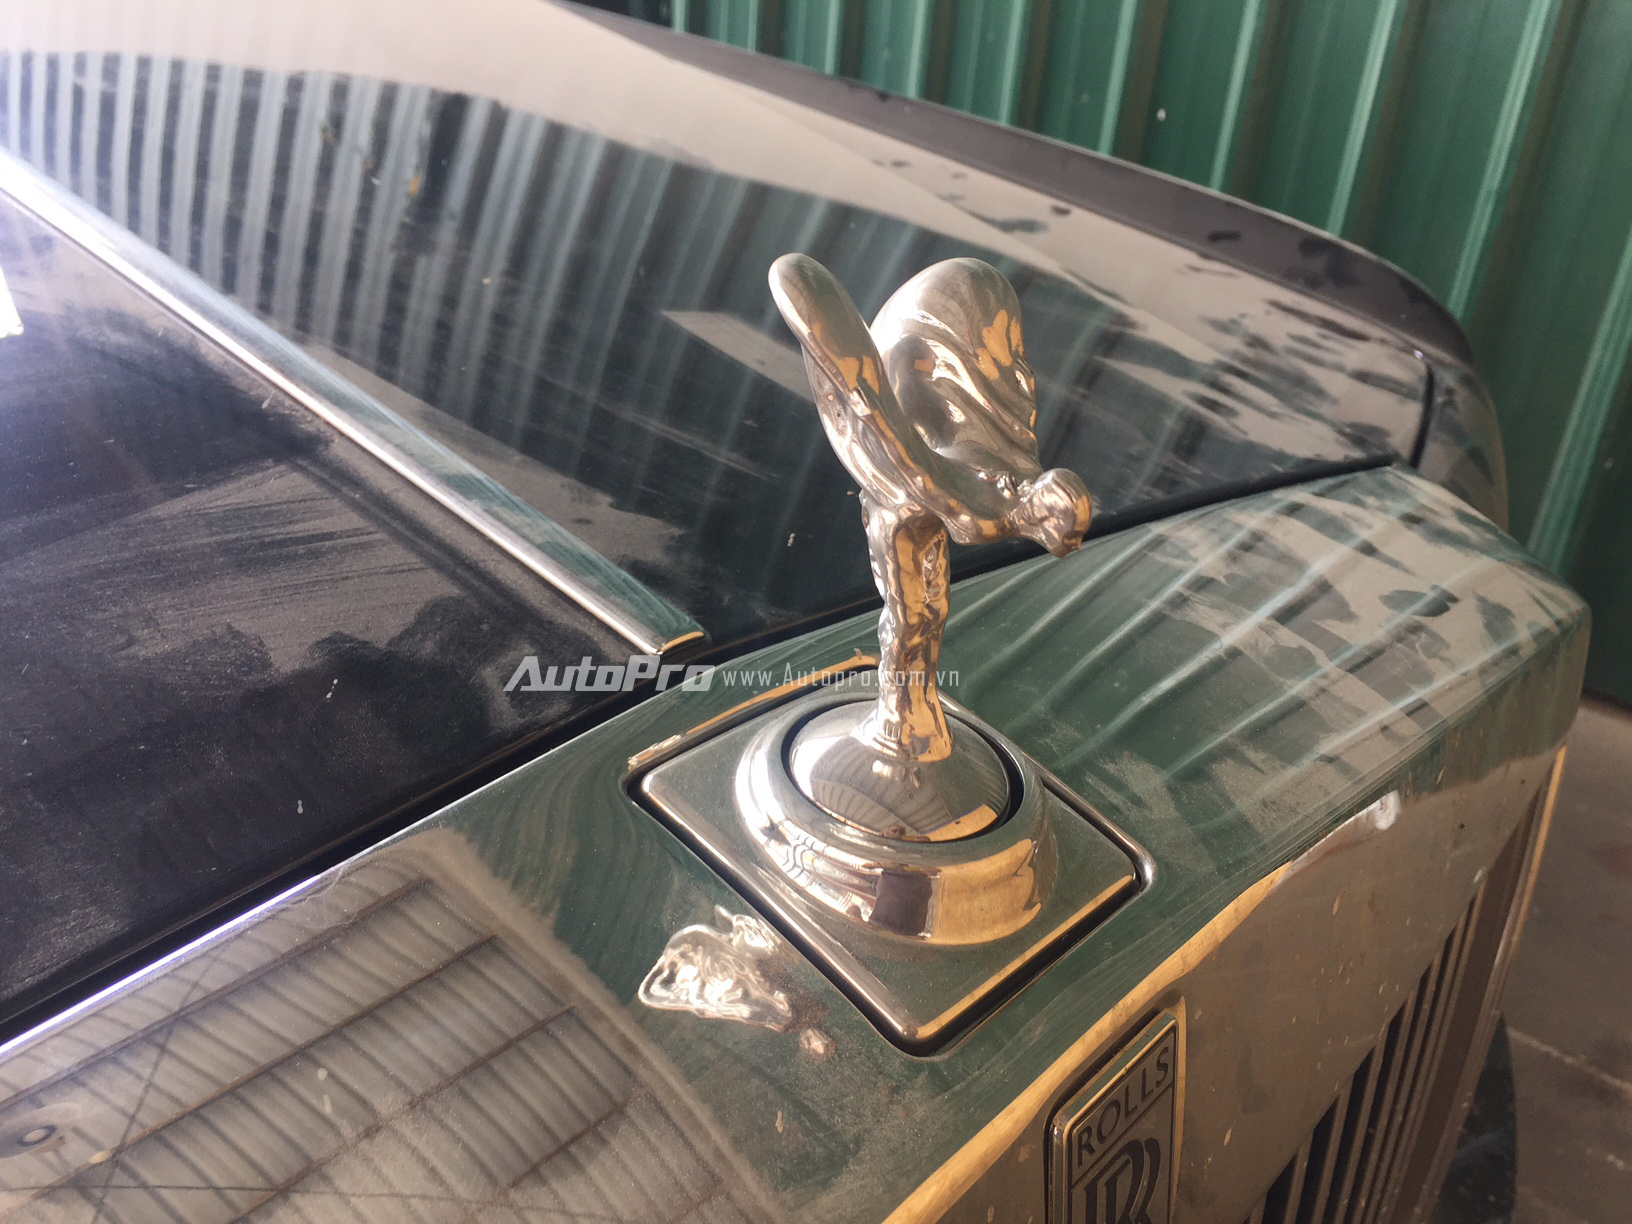 
Phần đầu xe là biểu tượng Spirit Ectasy bằng bạc rất đặc trưng của Rolls-Royce.
